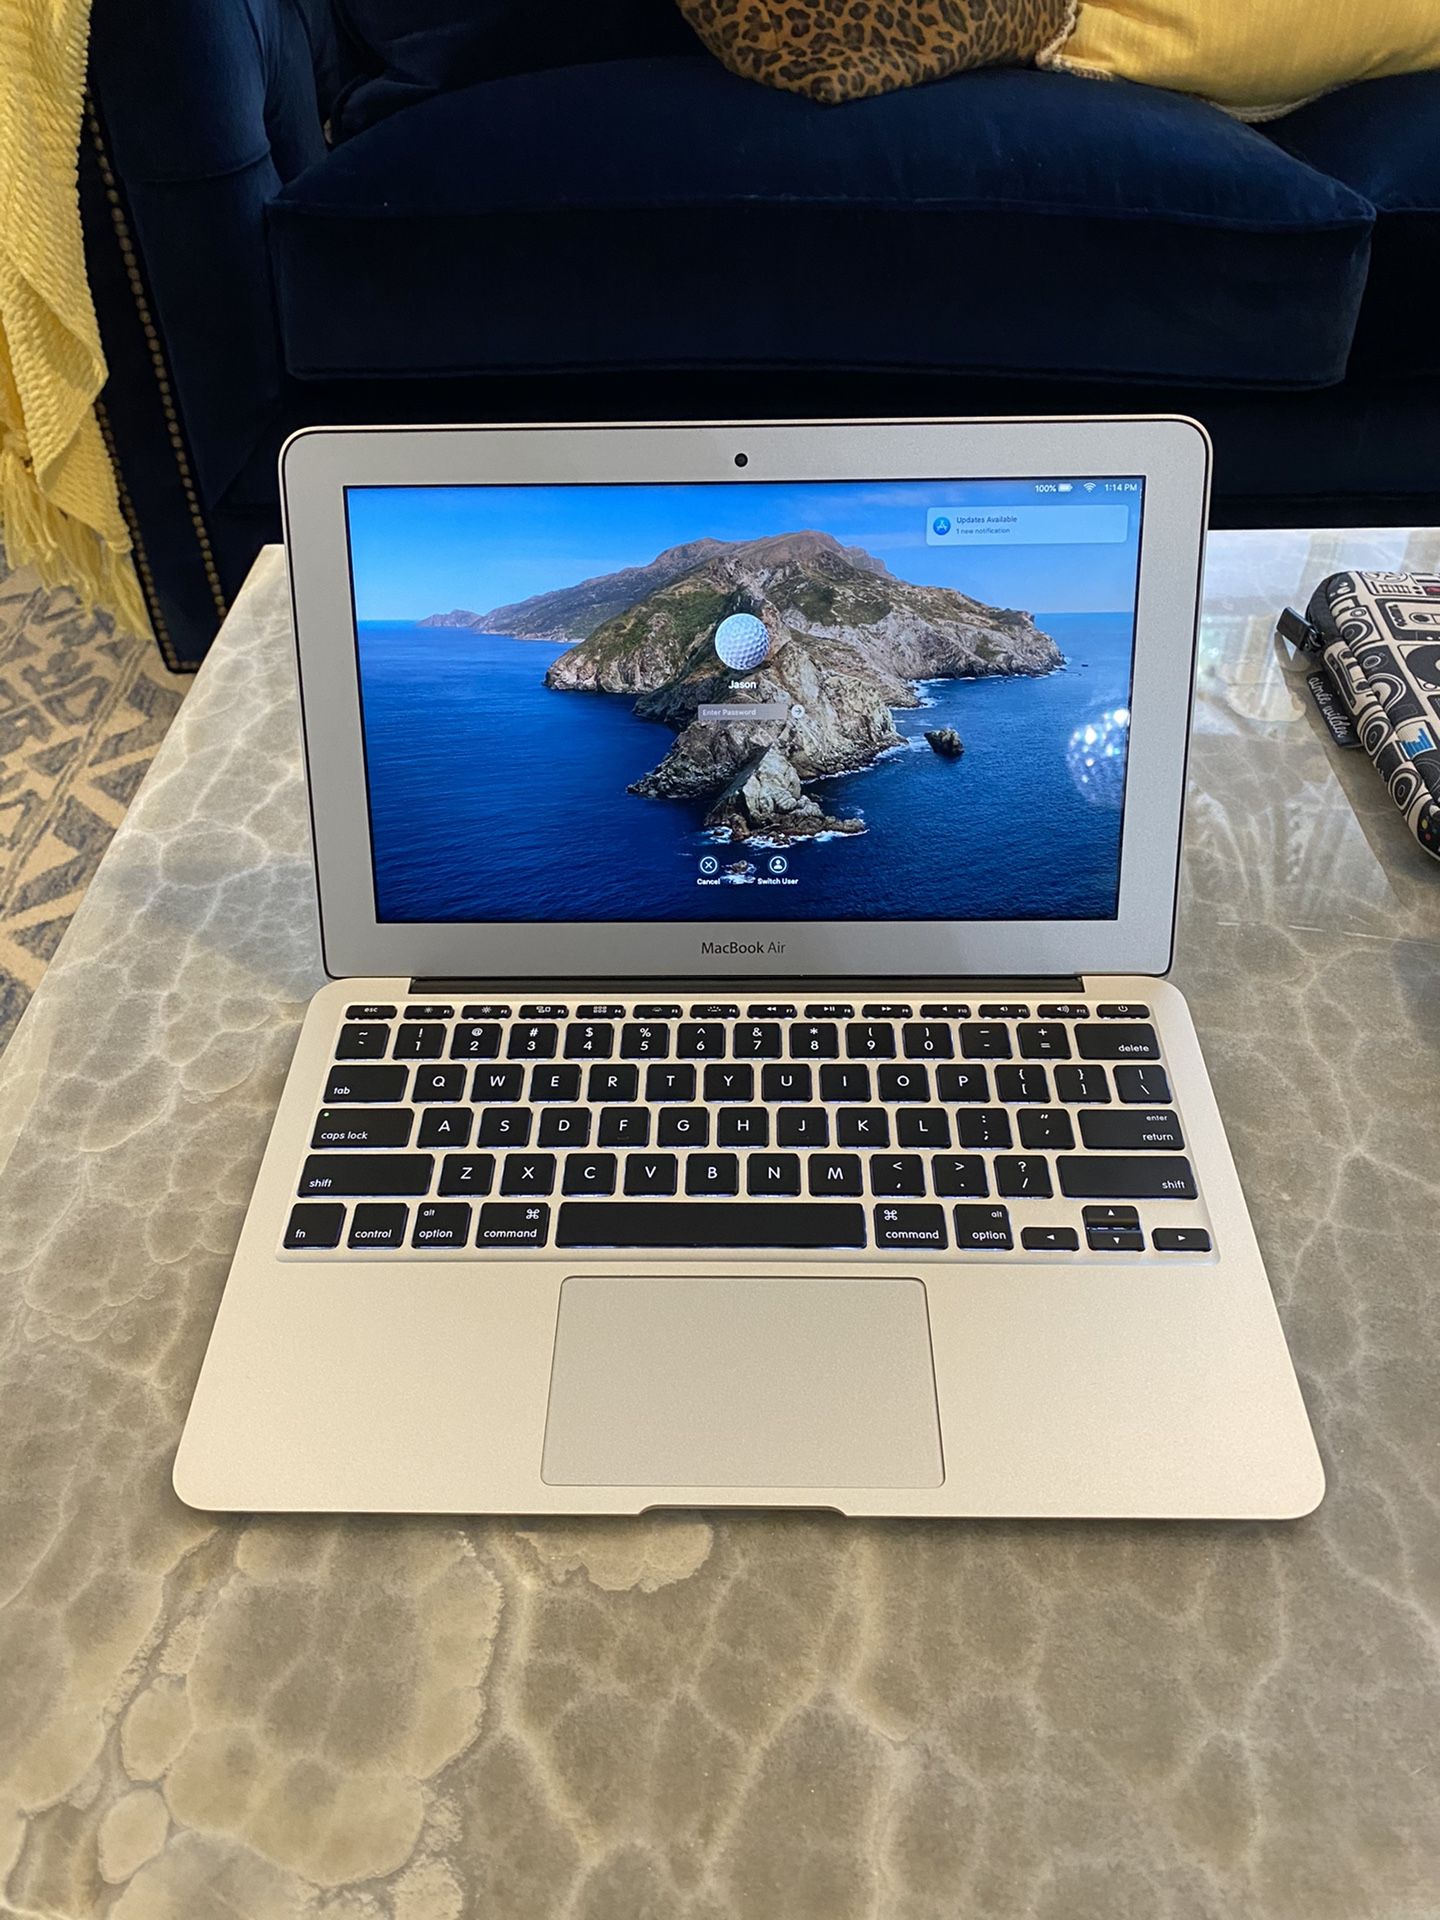 Computer MacBook Air combo kit “NO SHIPPING”